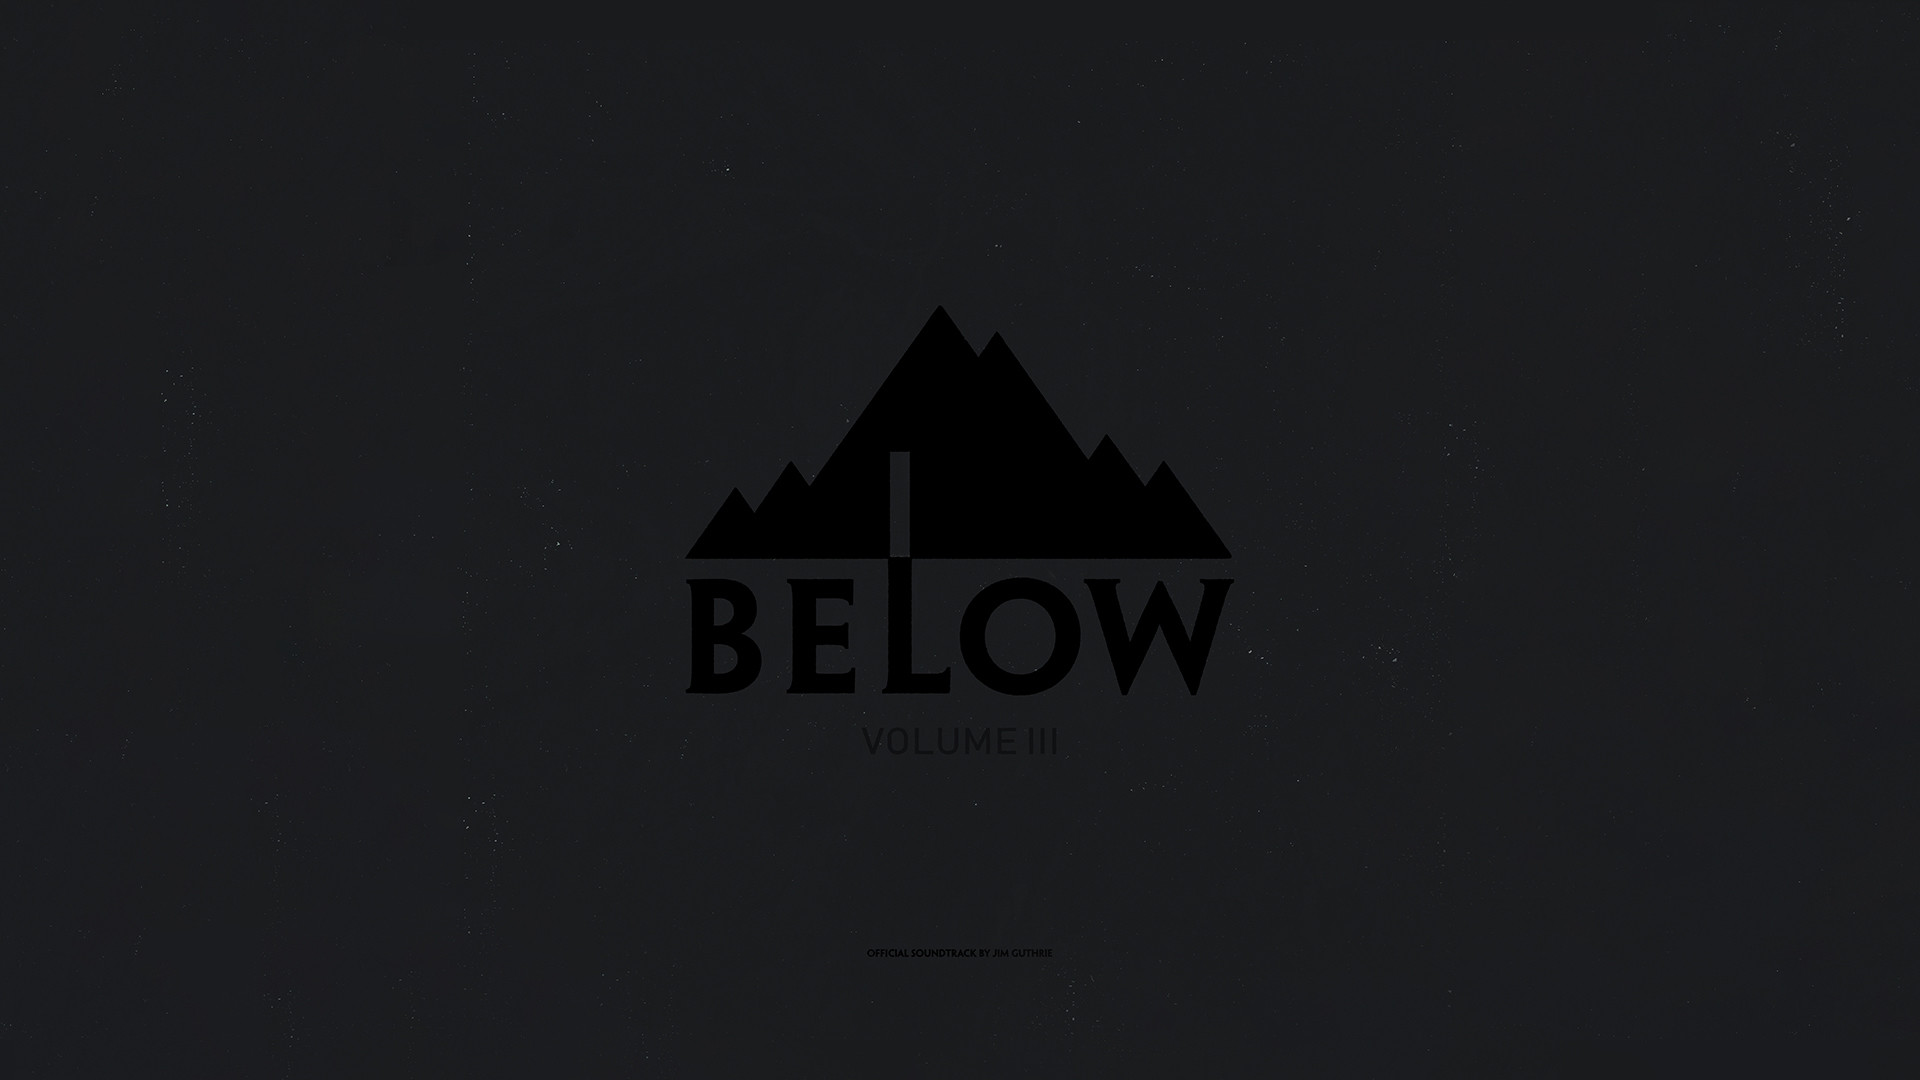 BELOW Vol. 3 - Soundtrack screenshot